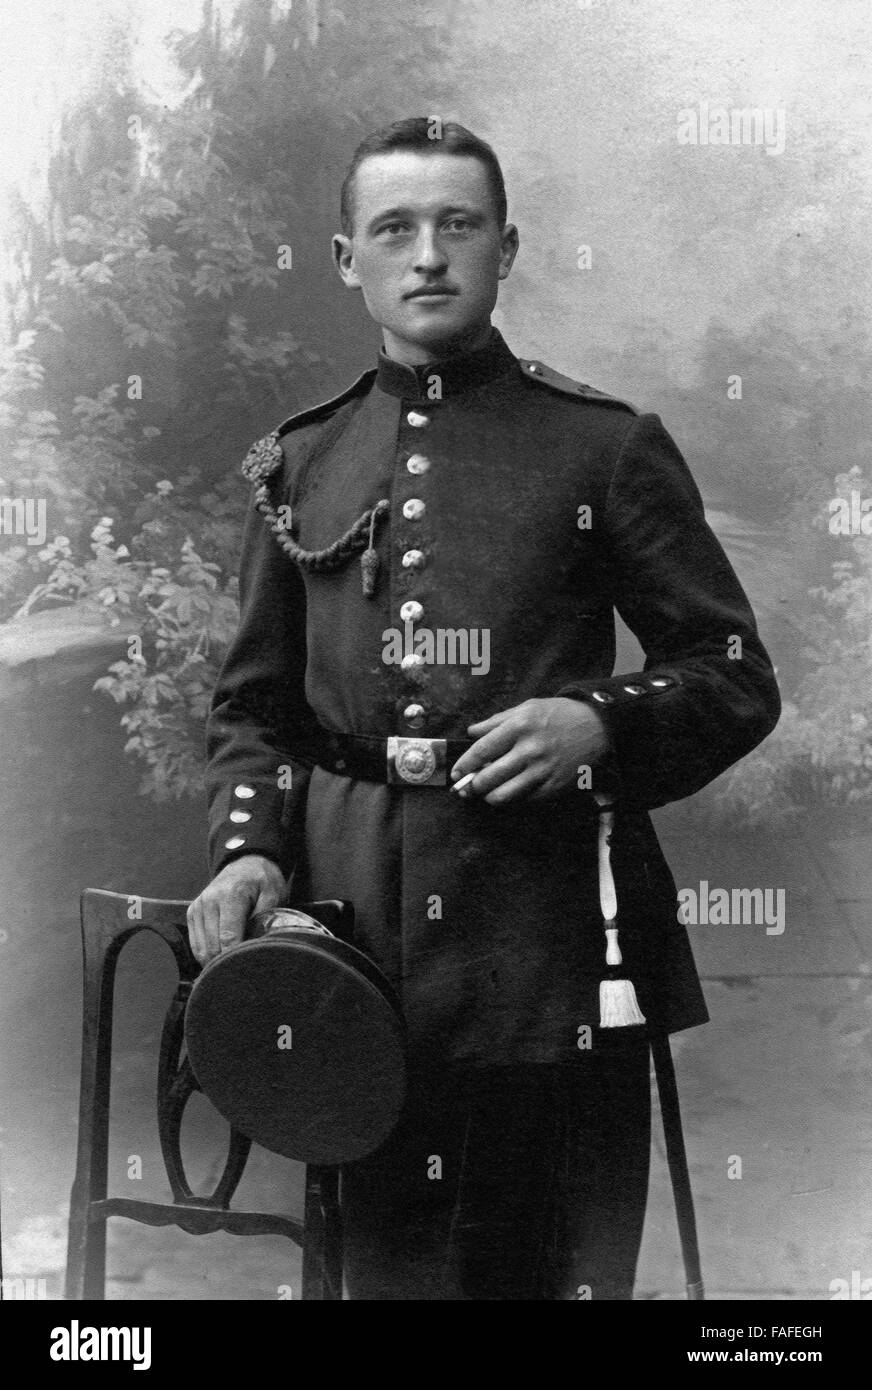 Porträt eines Mannes en uniforme, Deutschland 1900er Jahre. Portrait d'un homme en univorm, l'Allemagne des années 1900. Banque D'Images